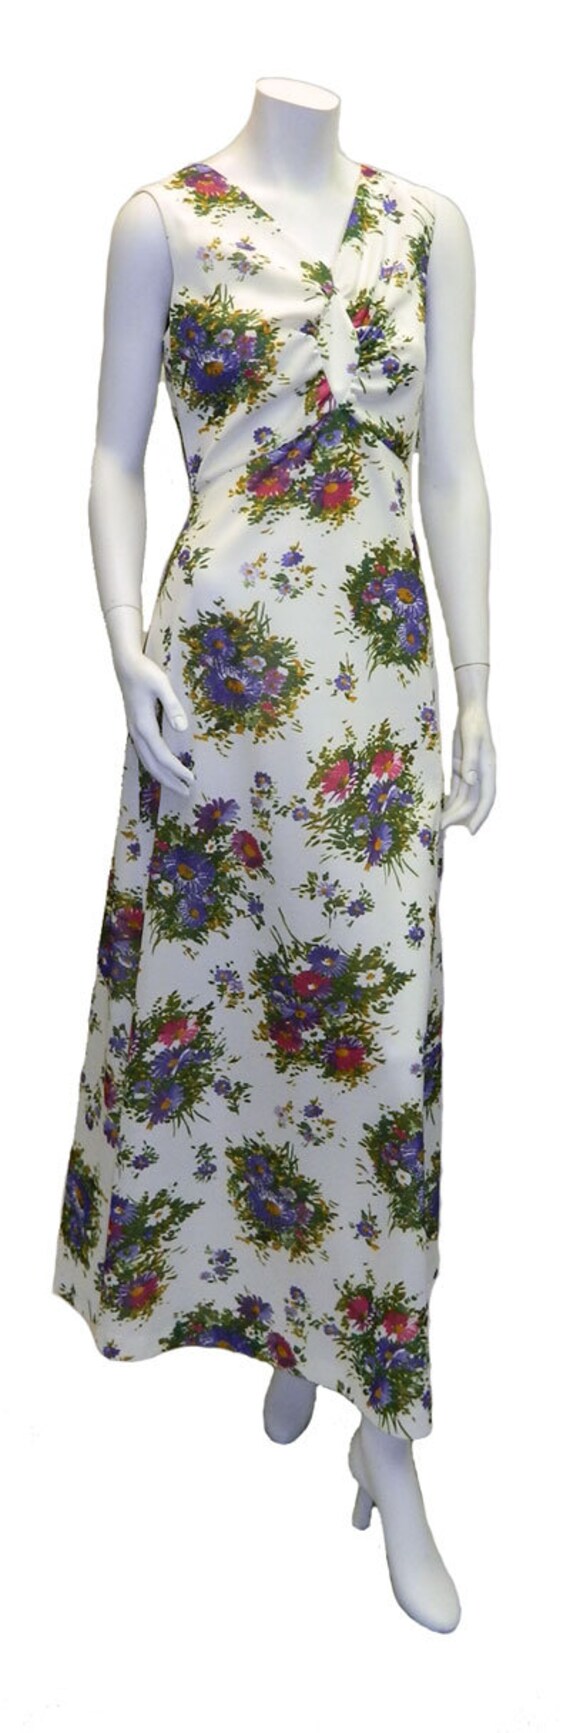 Vintage 1970s Long Floral Summer Dress Size 8 - image 4